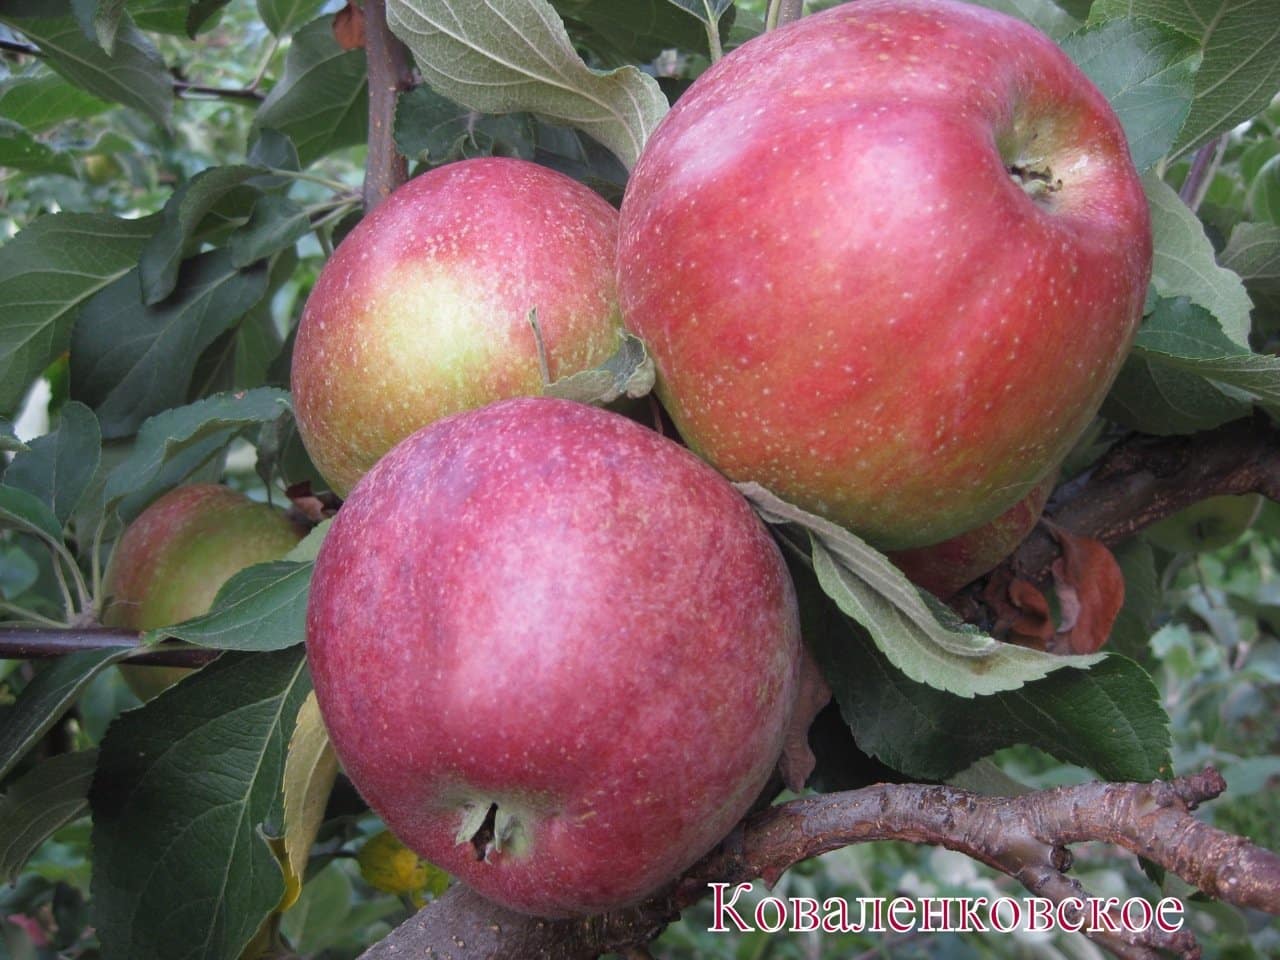 Яблоки сорта Коваленковское